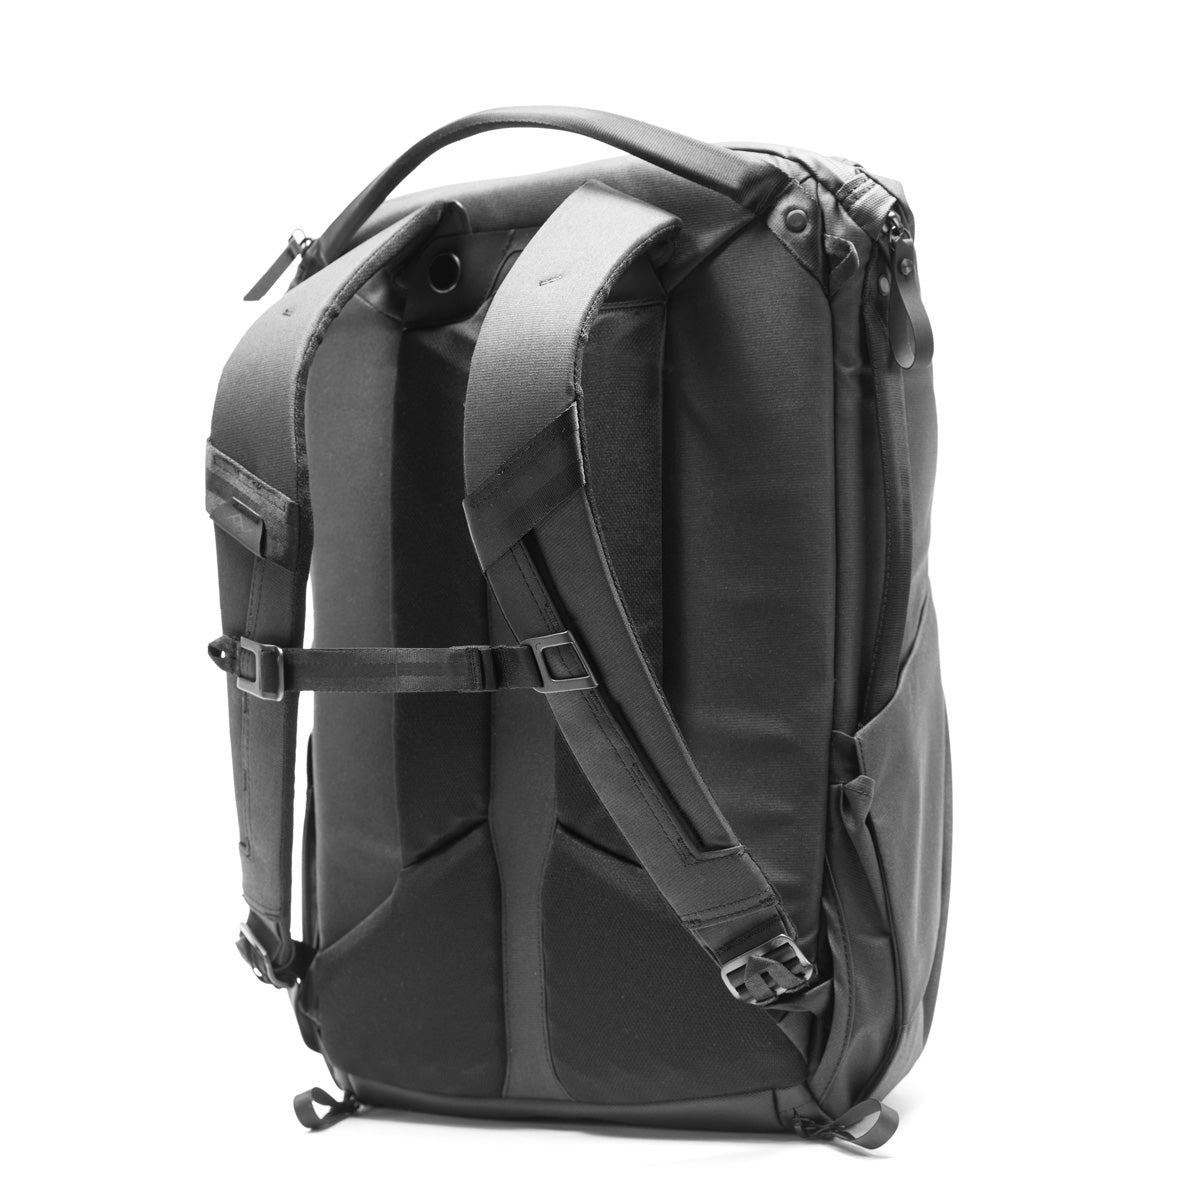 Peak Design Everyday Backpack 30L - Black